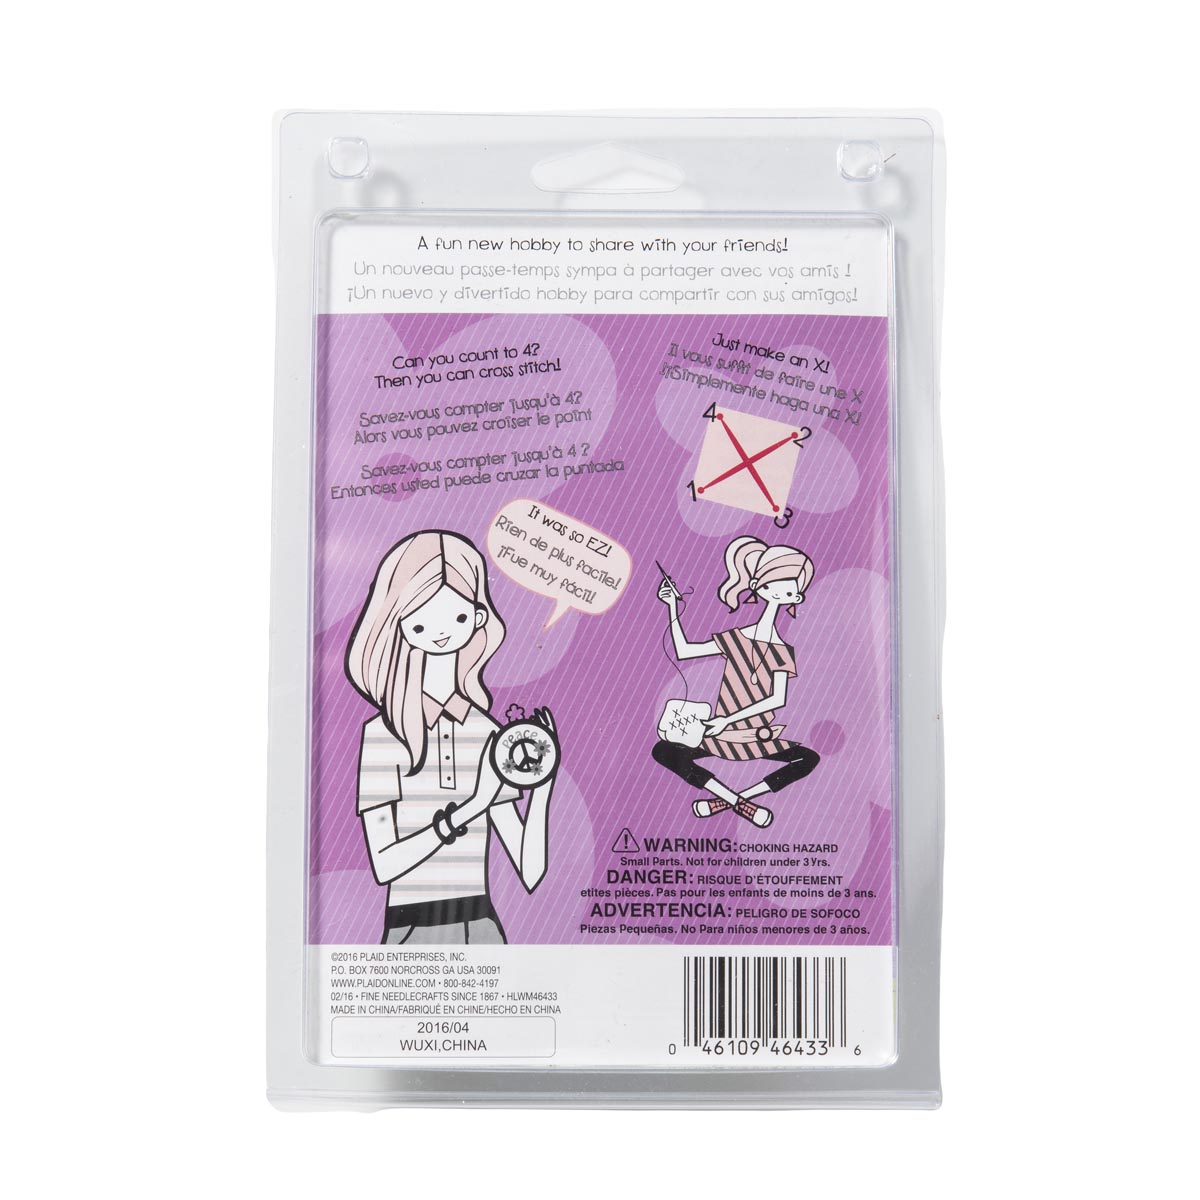 Bucilla ® My 1st Stitch™ - Counted Cross Stitch Kits - Mini - Mermaid - WM46433